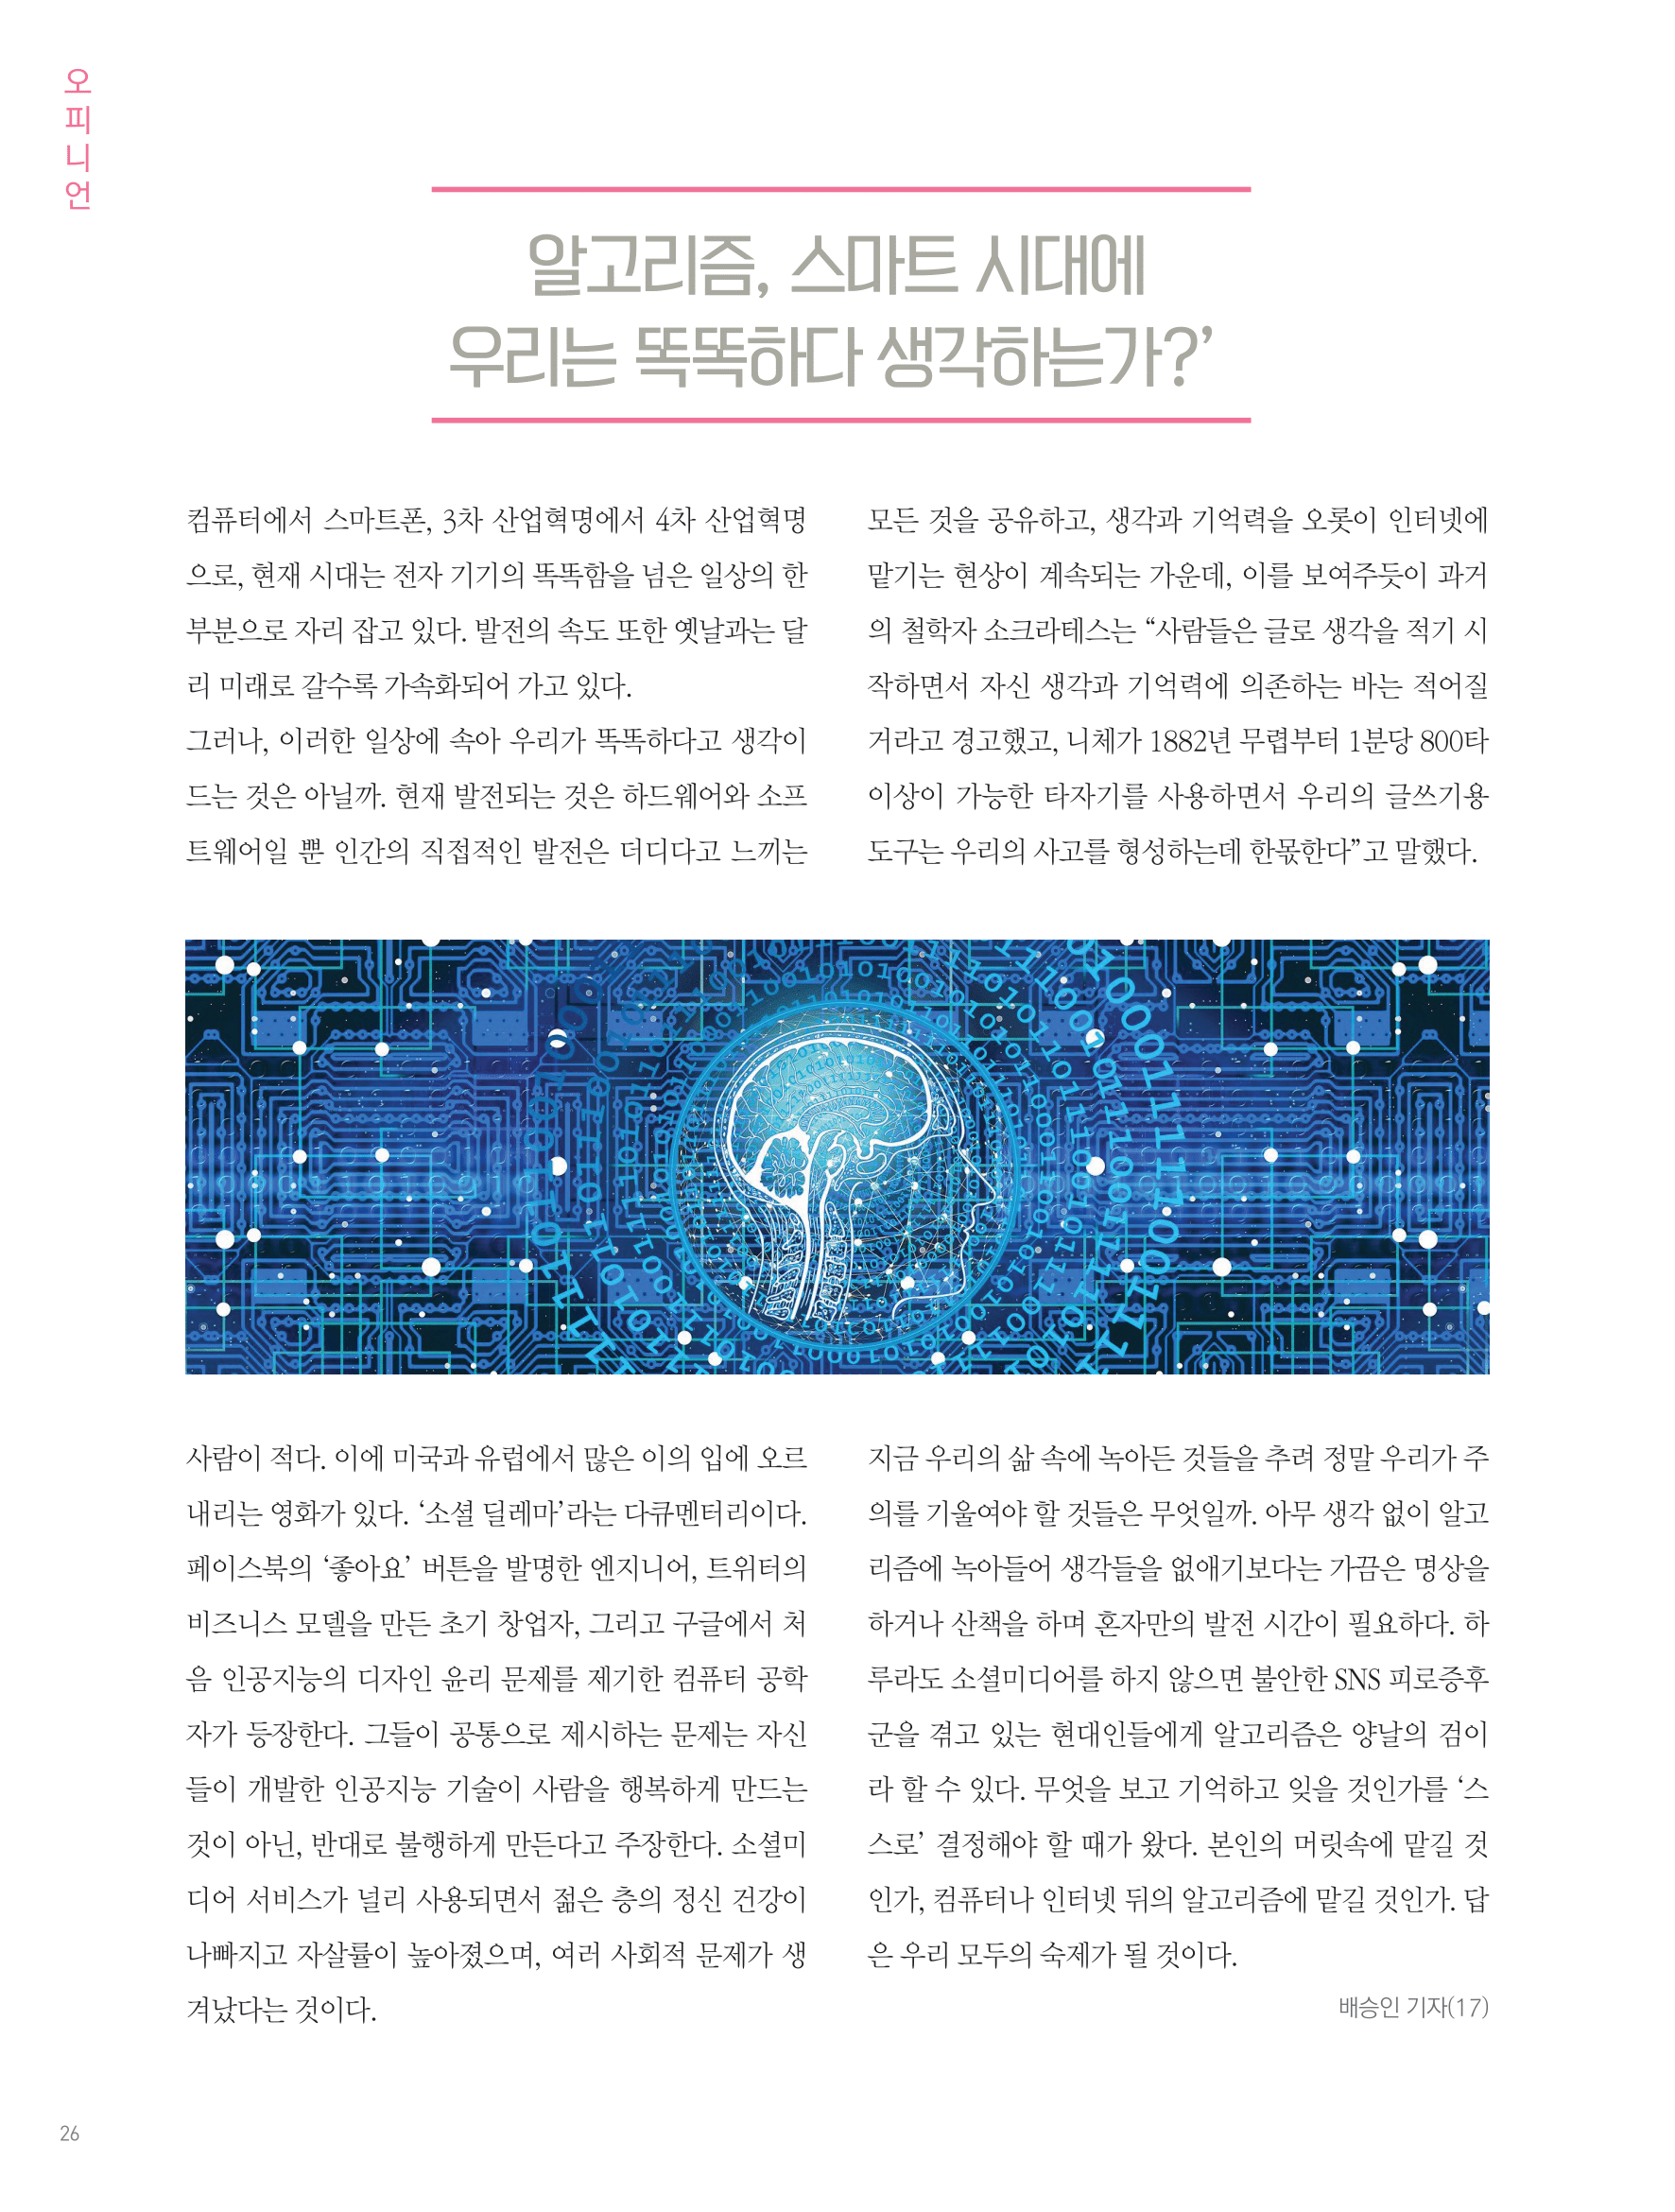 뜻새김 신문 76호 24